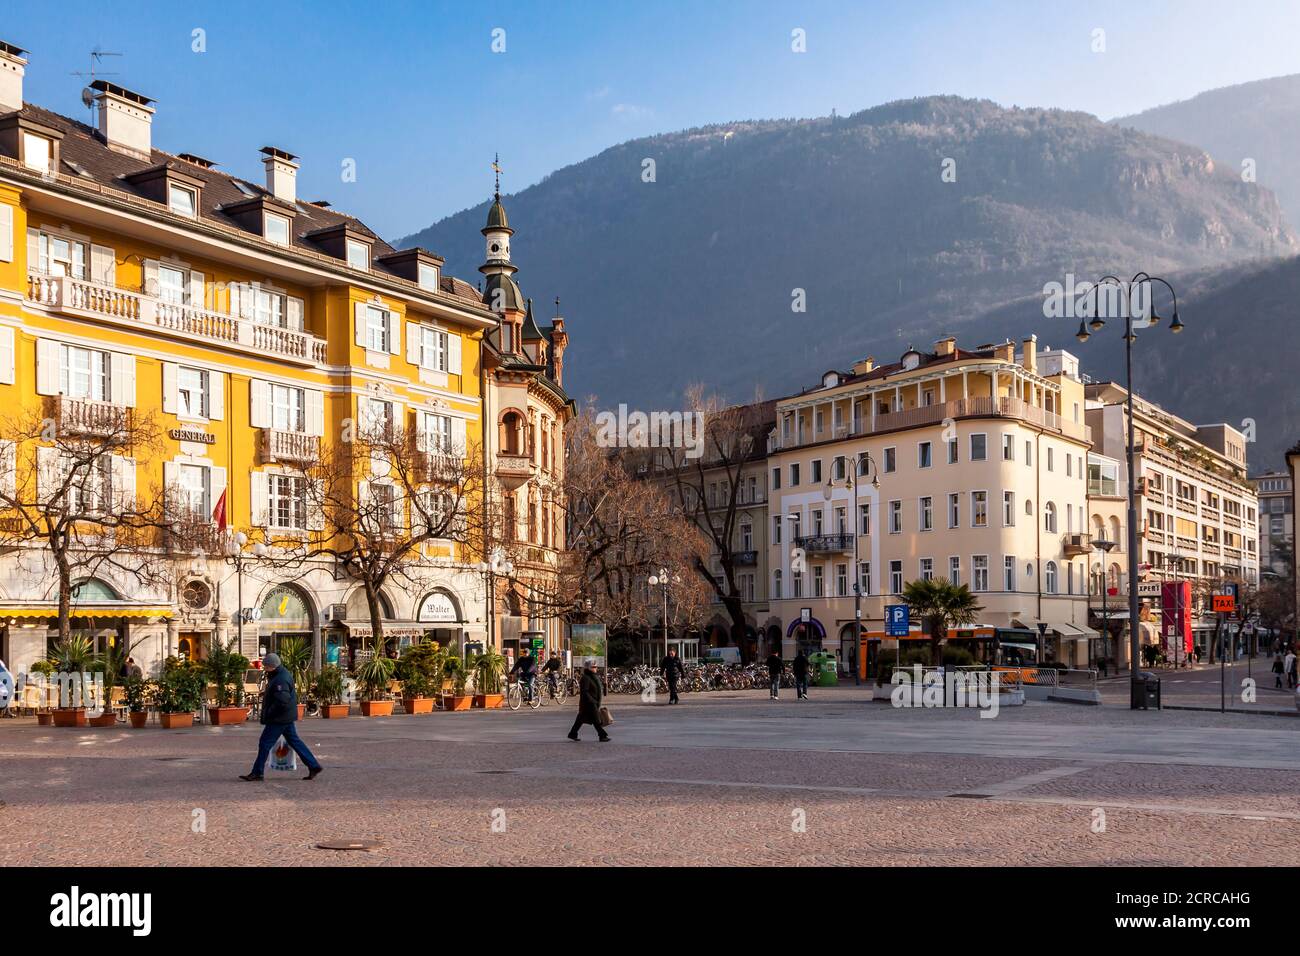 Center, Bolzano, Etschtal, Alps, South Tyrol, Italy, Europe Stock Photo